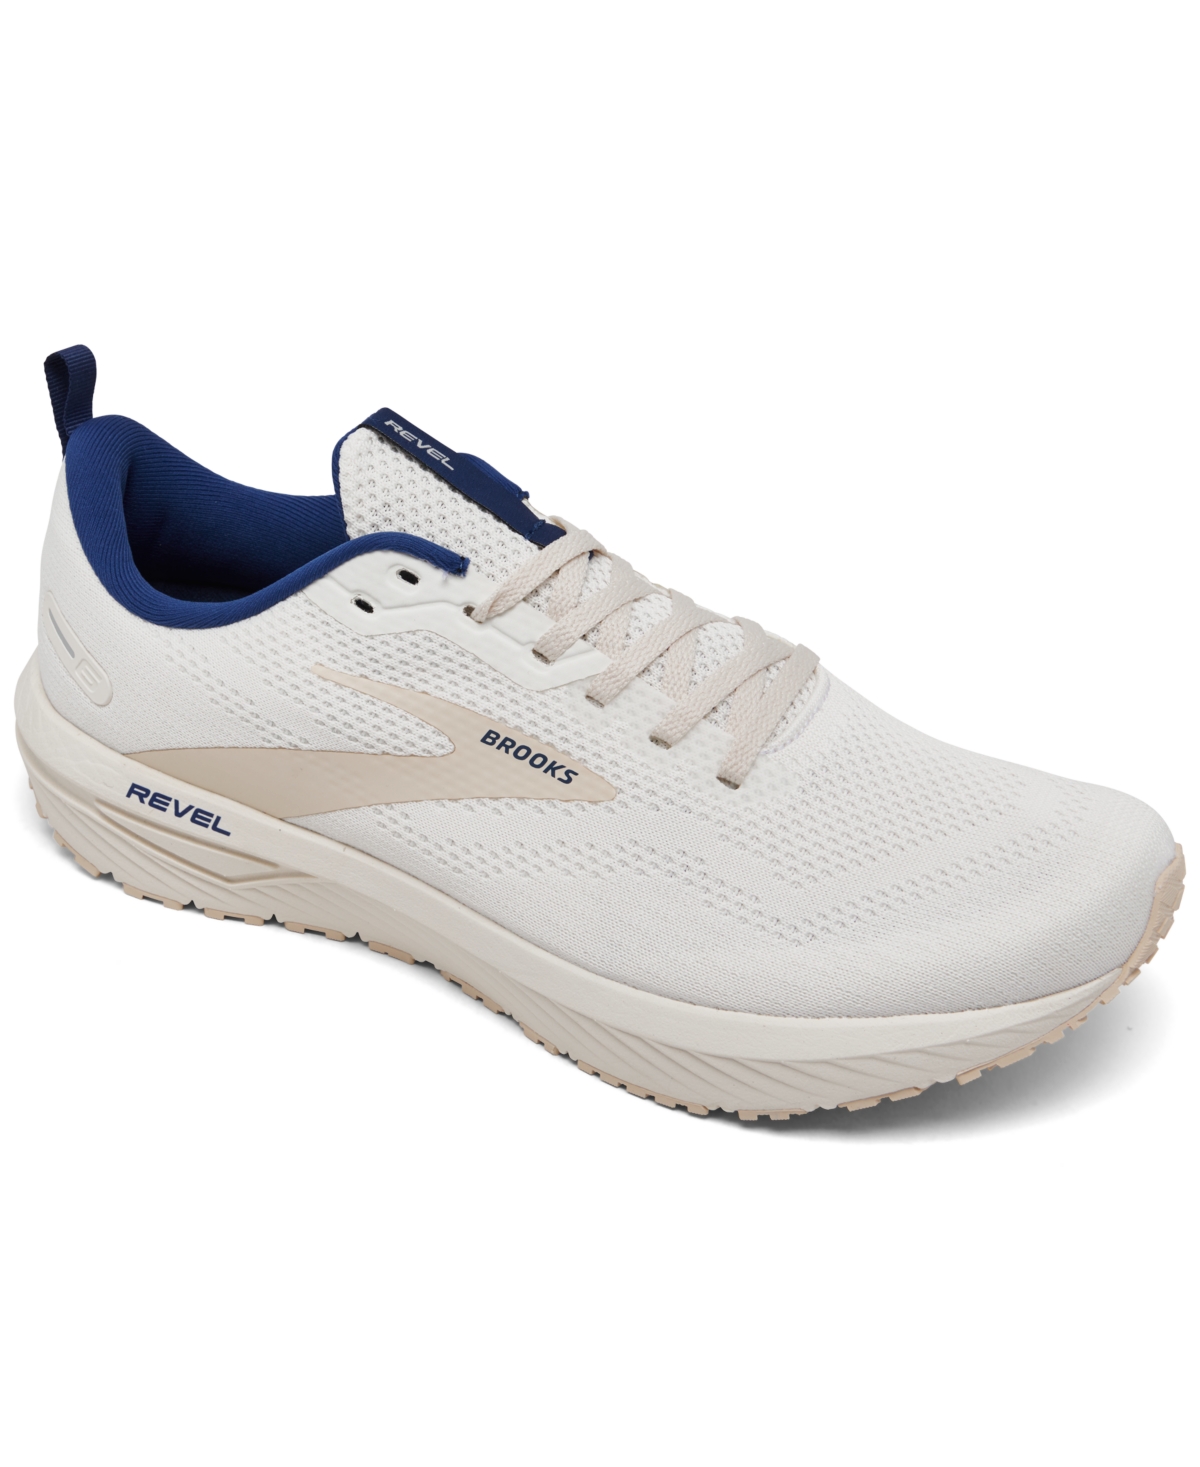 Men's Revel 6 Running Sneakers from Finish Line - White, Marshmallow, Blue